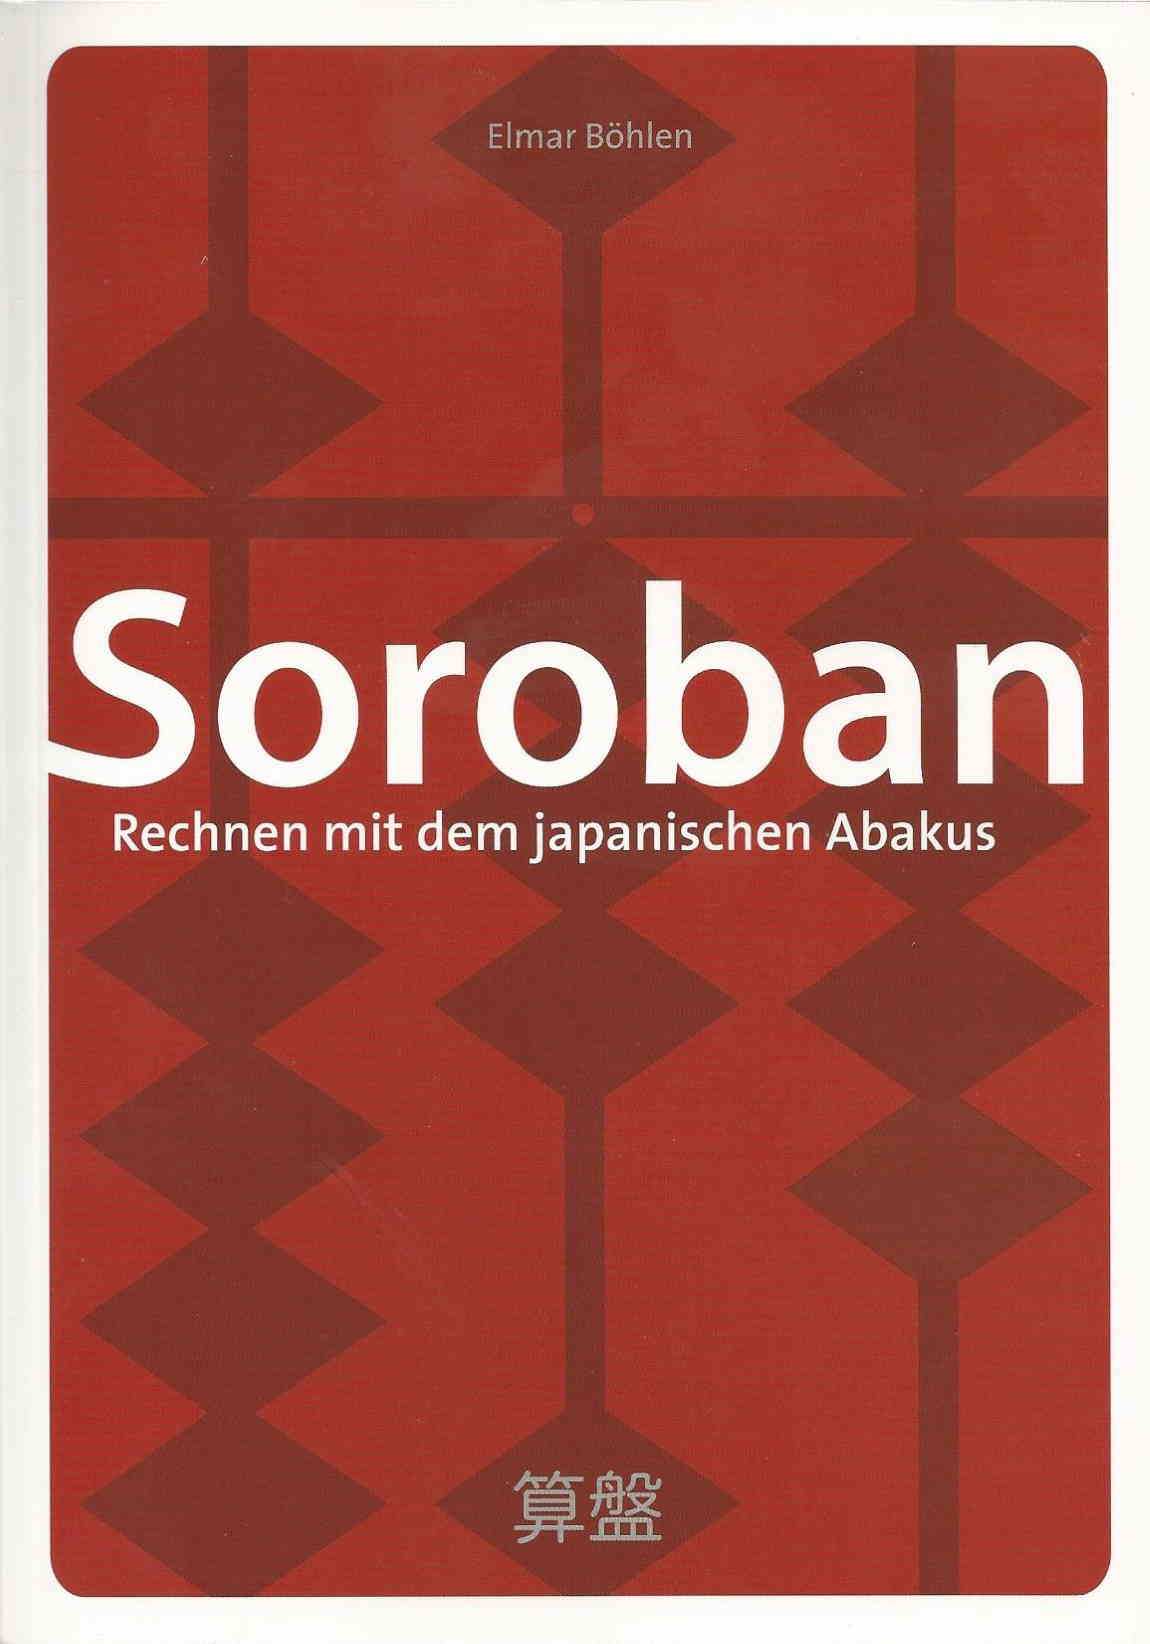 Elmar Bhlen: "Soroban, Rechnen mit dem japanischen Abakus"